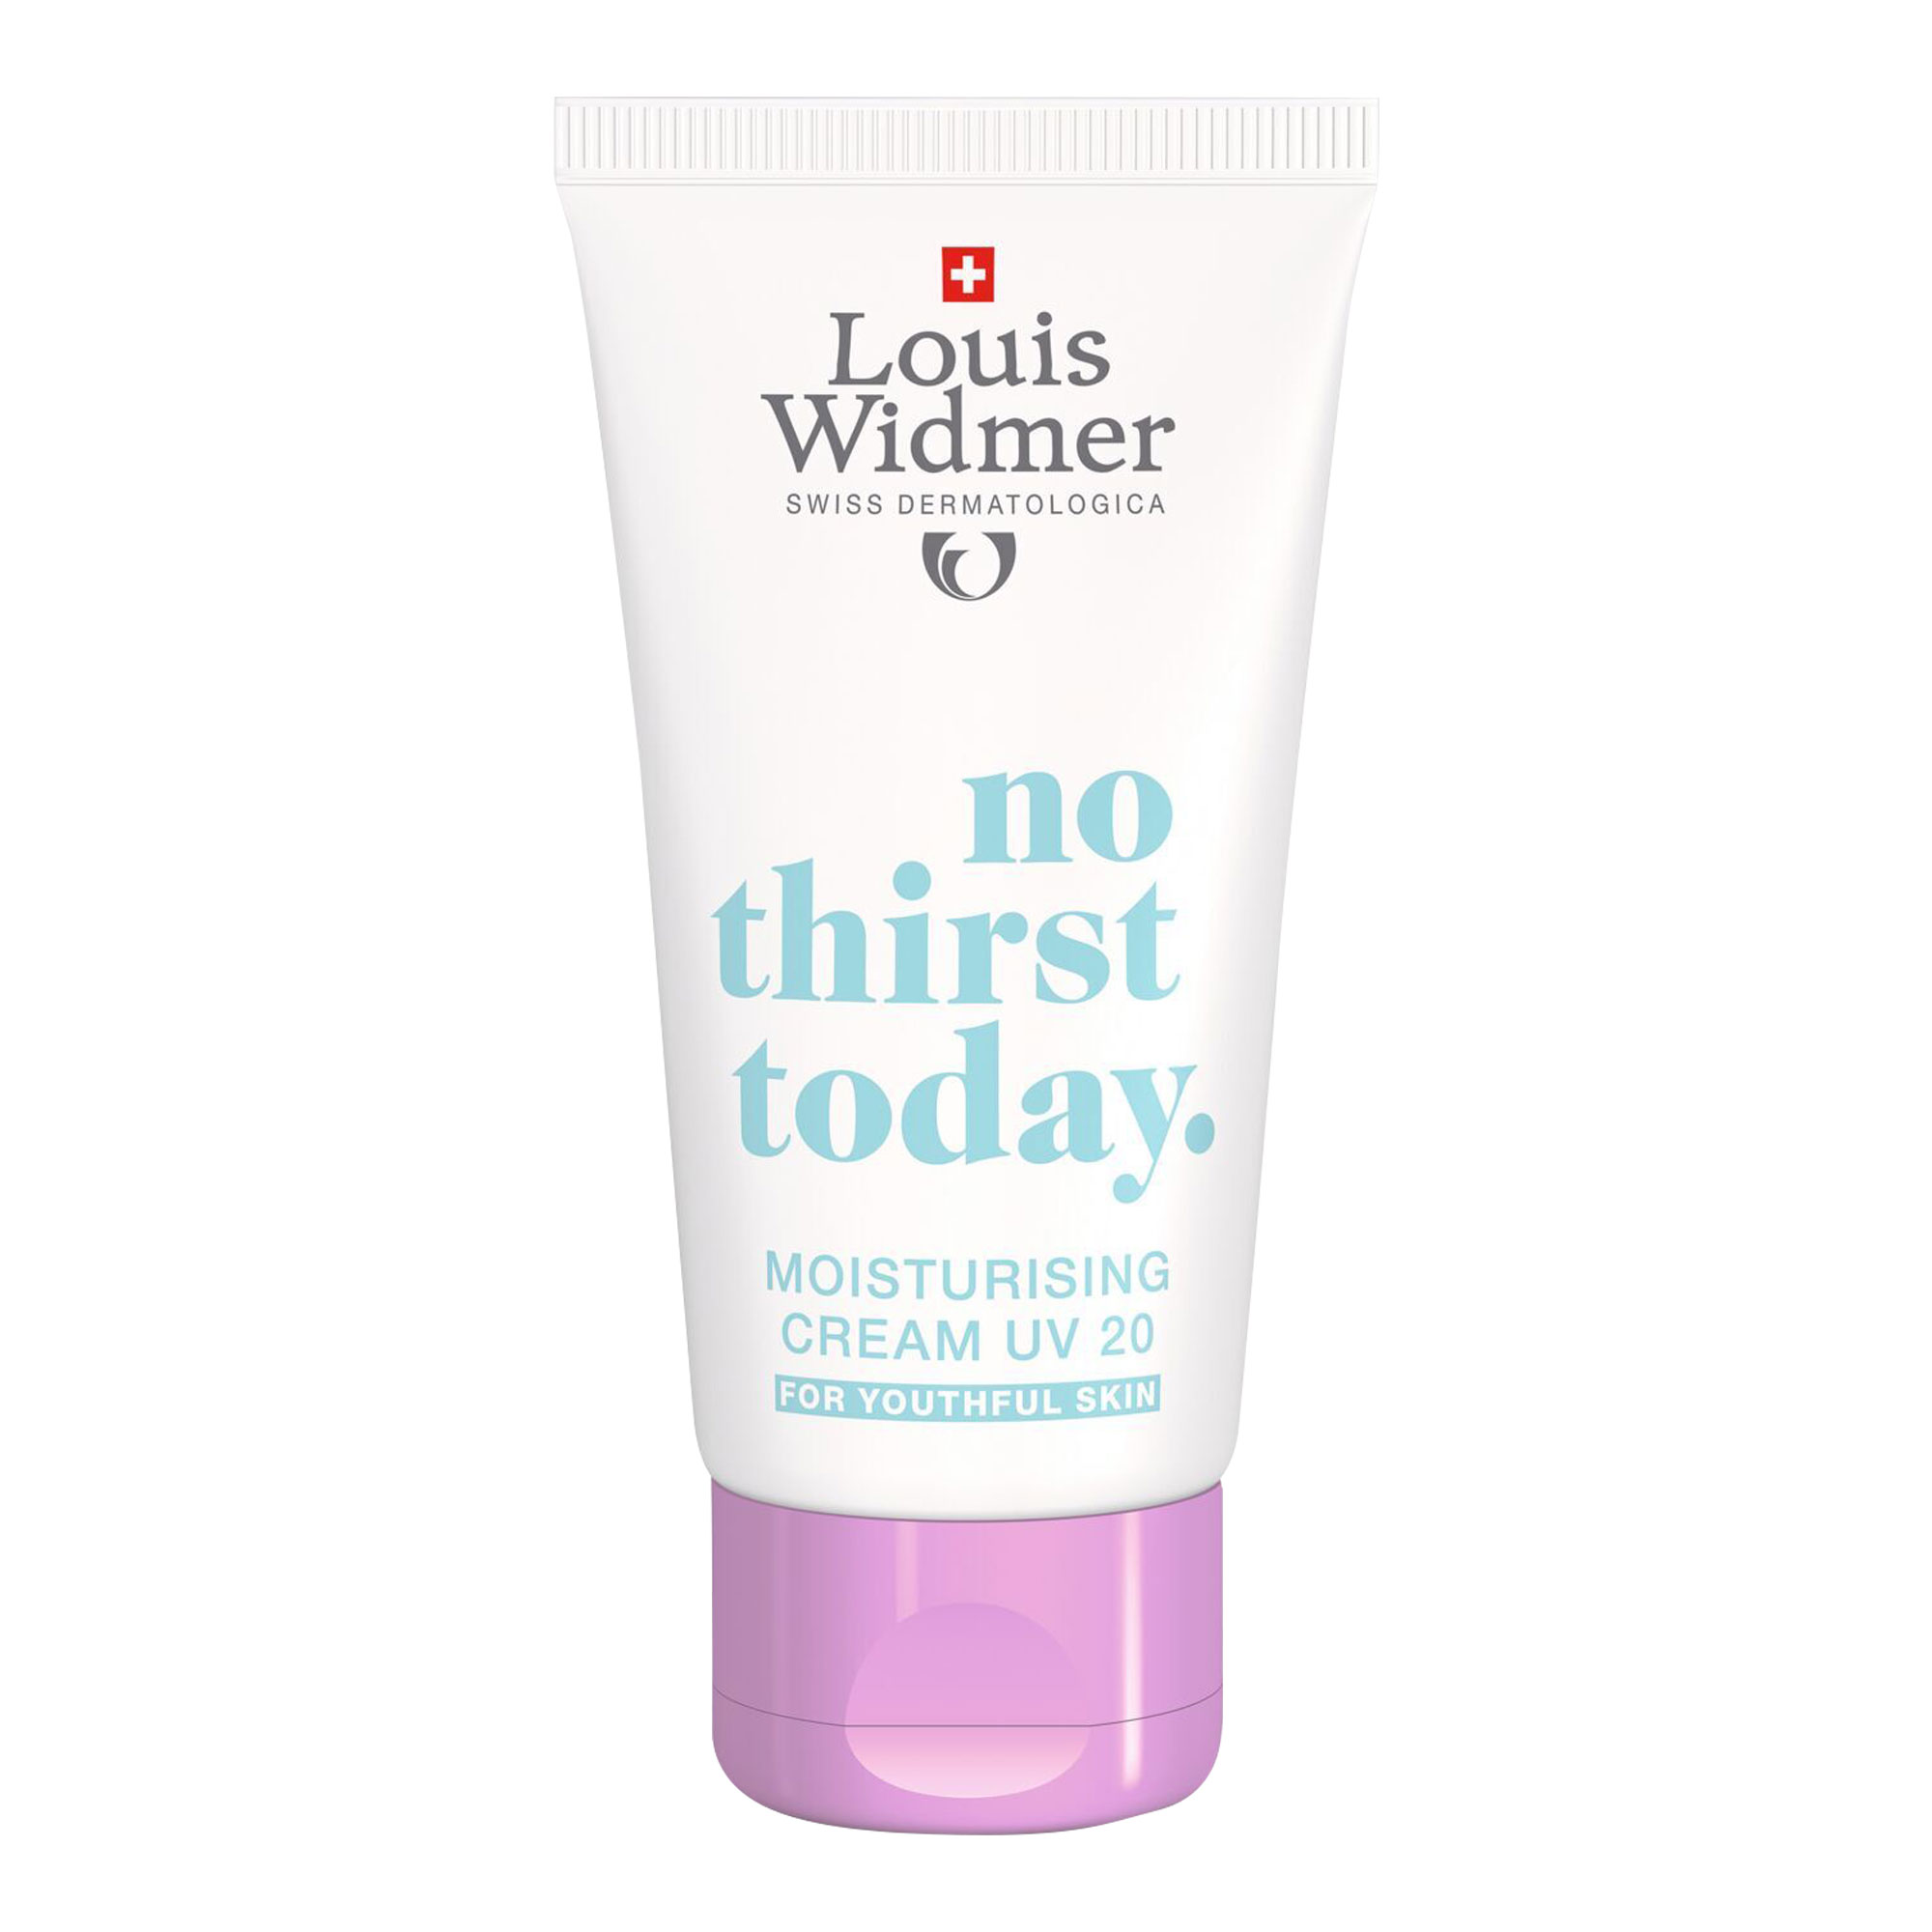 Feuchtigkeitsspendende Tagespflege mit LSF 20. Schützt die Haut vor UV-, Infrarot- und blauem Licht. Mit Parfum.